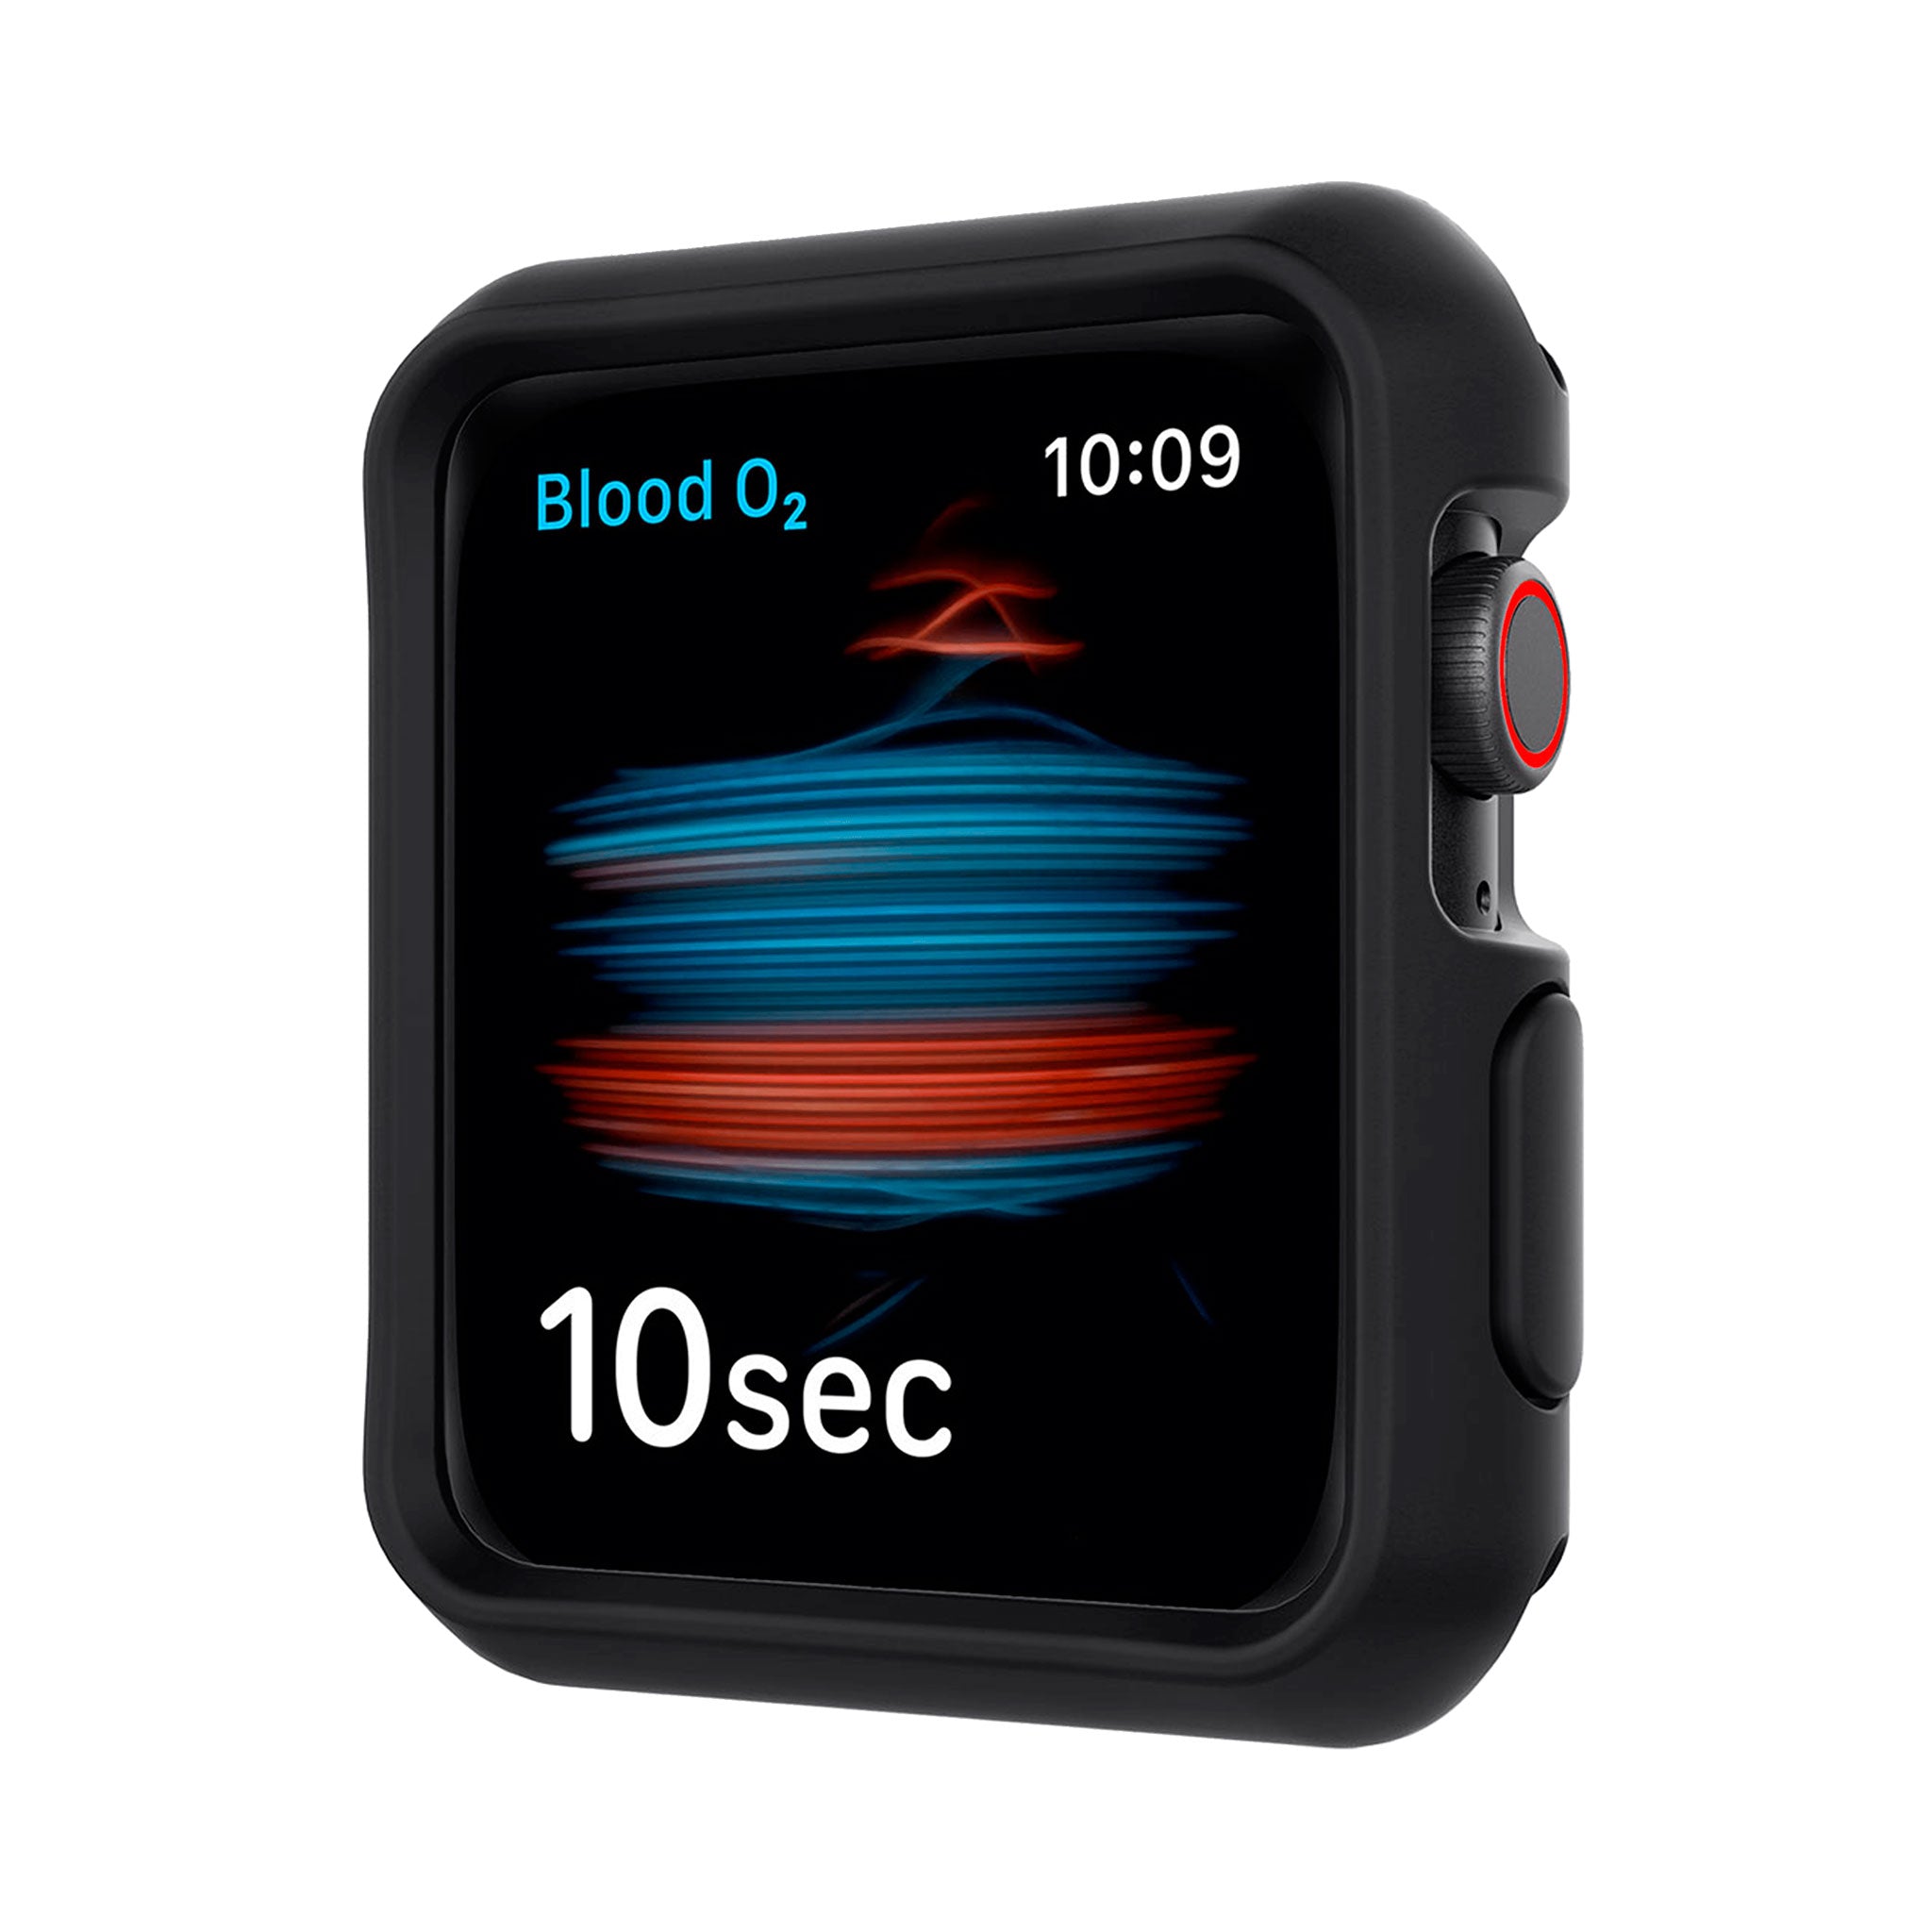 Itskins - Spectrum Solid Bumper Case 2 Pack For Apple Watch 40mm - Black